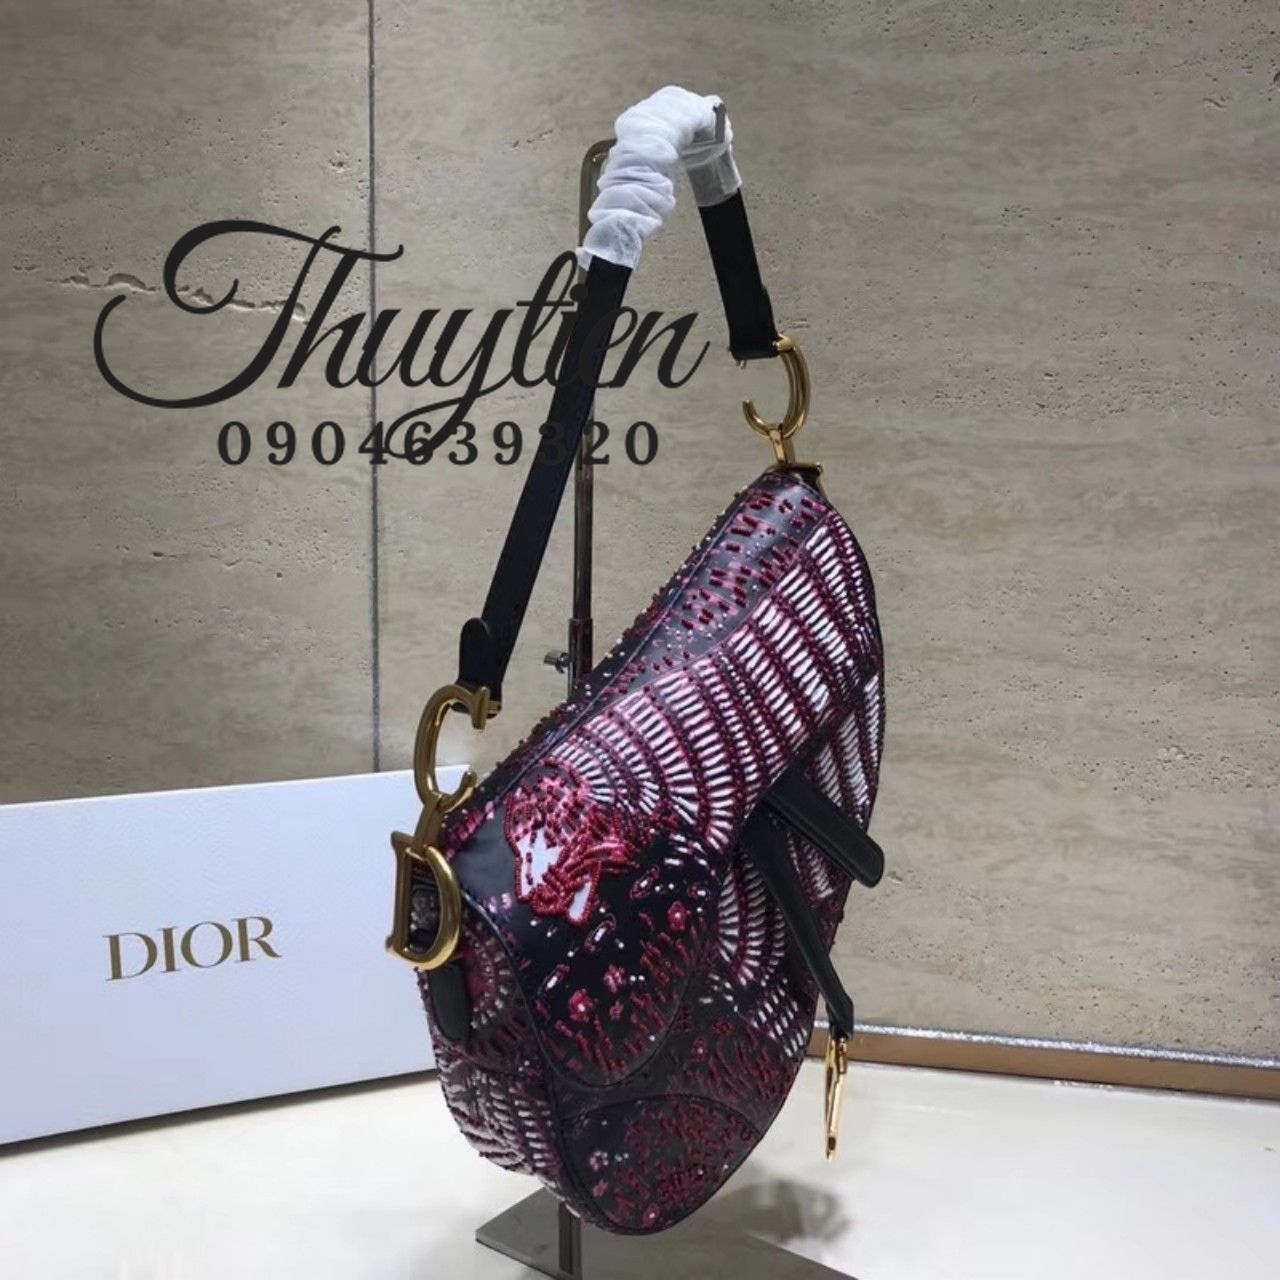 Mini Saddle Dior THU MUA ĐỒ HIỆU  Mua Hàng Hiệu Toàn Quốc Giá Cao